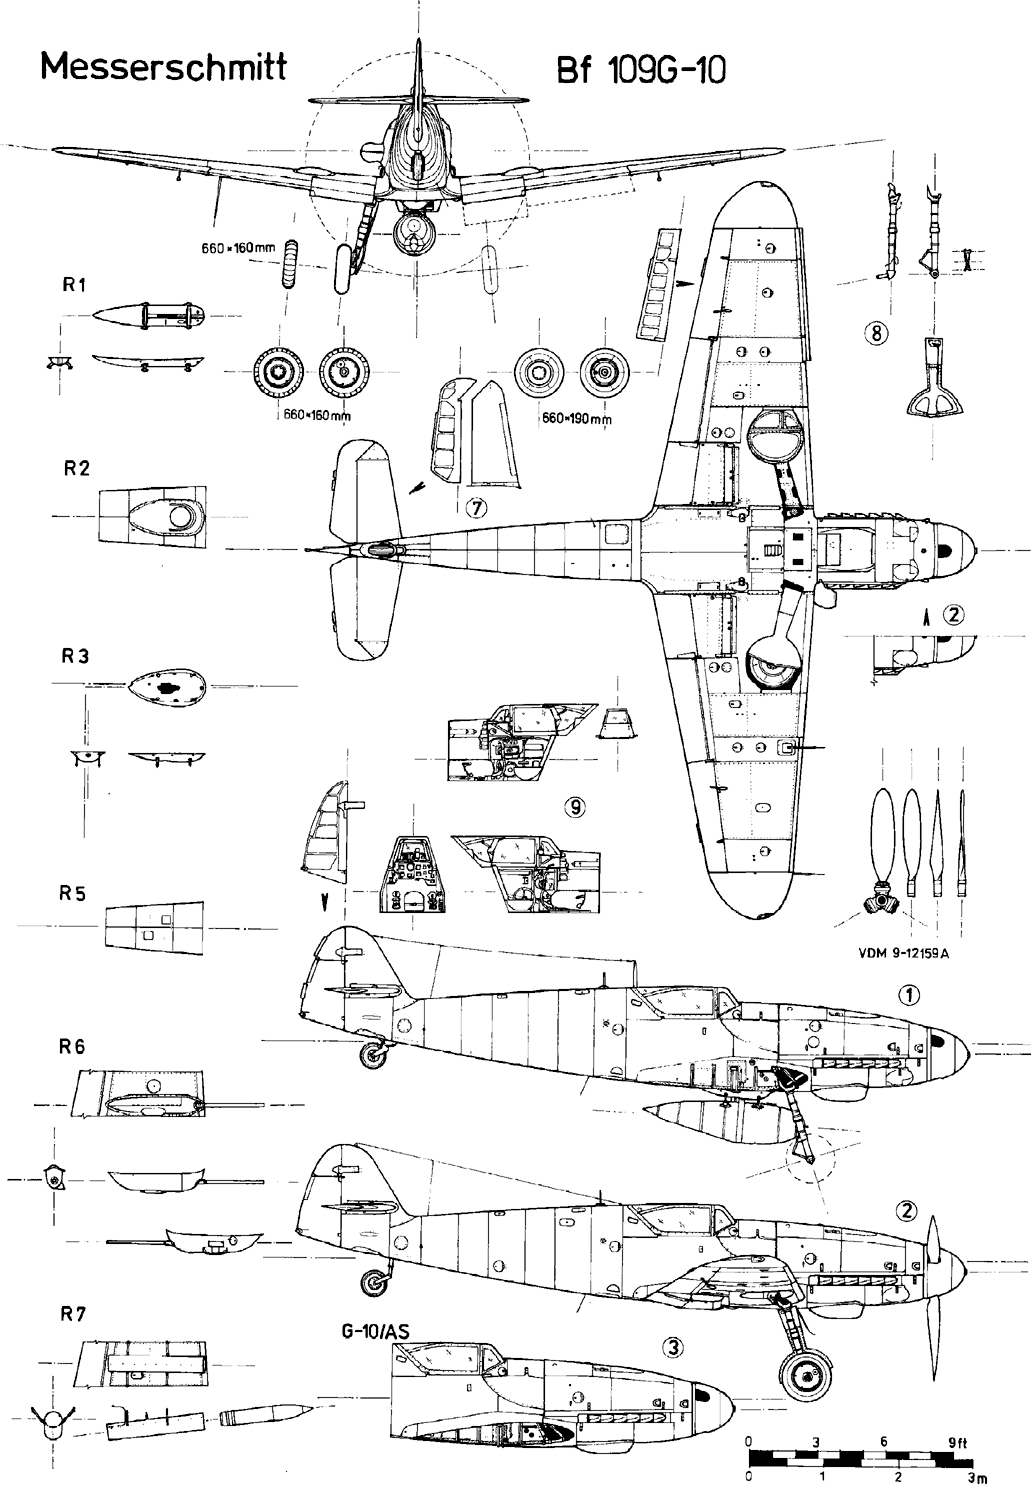 Messerschmitt Bf 109 blueprint